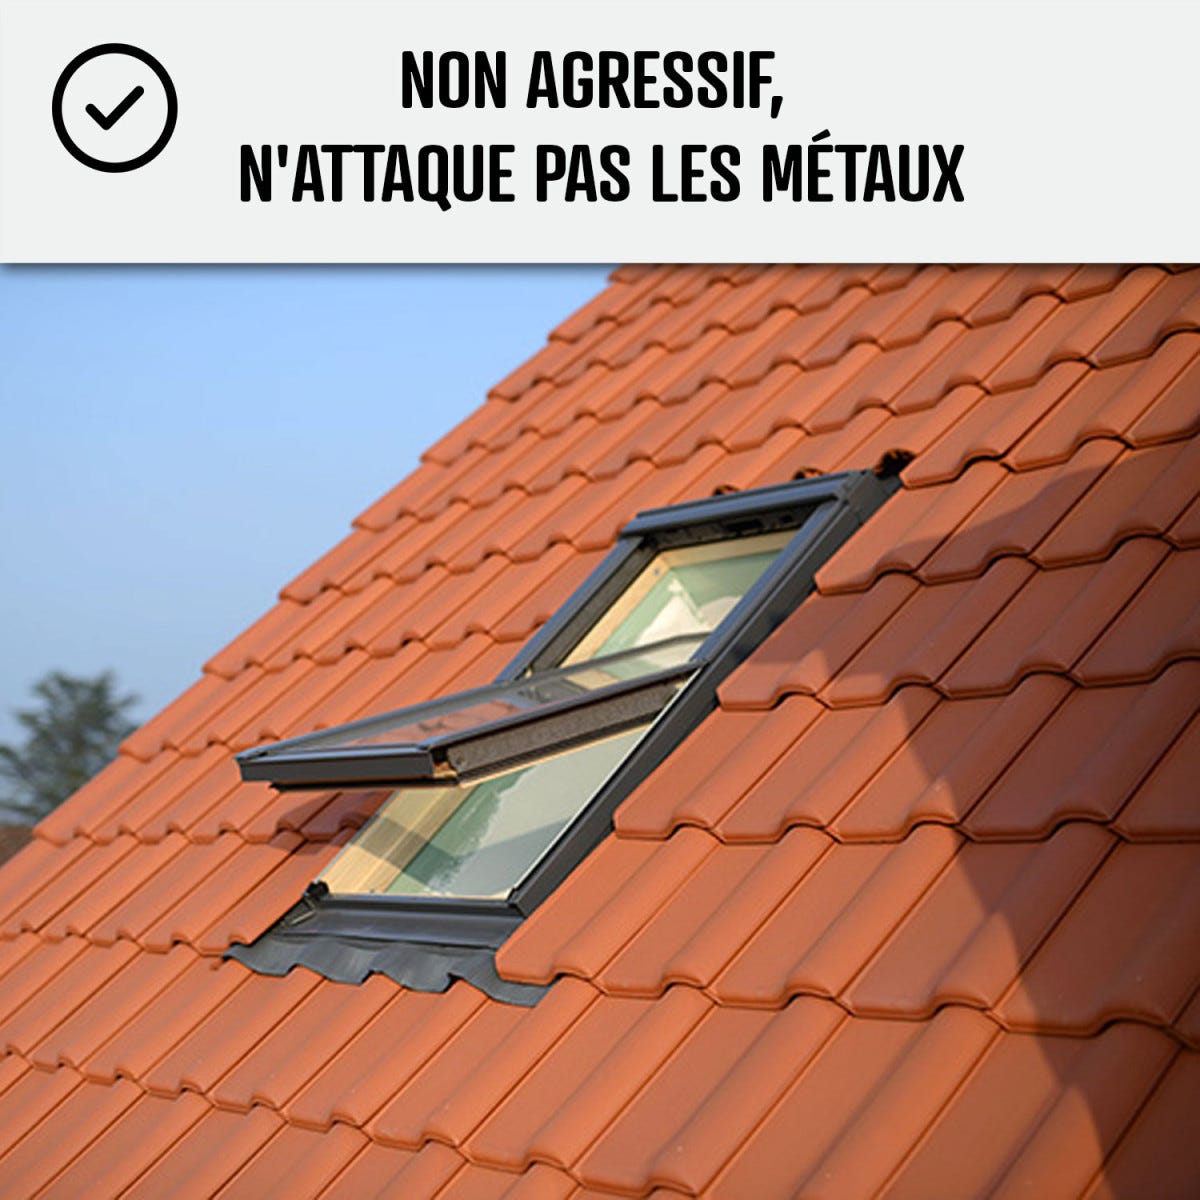 Traitement anti-dépots verts ULTRA CONCENTRÉ pour toitures et tuiles - 1 L (jusqu'à 250 m²) - - ARCANE INDUSTRIES 3